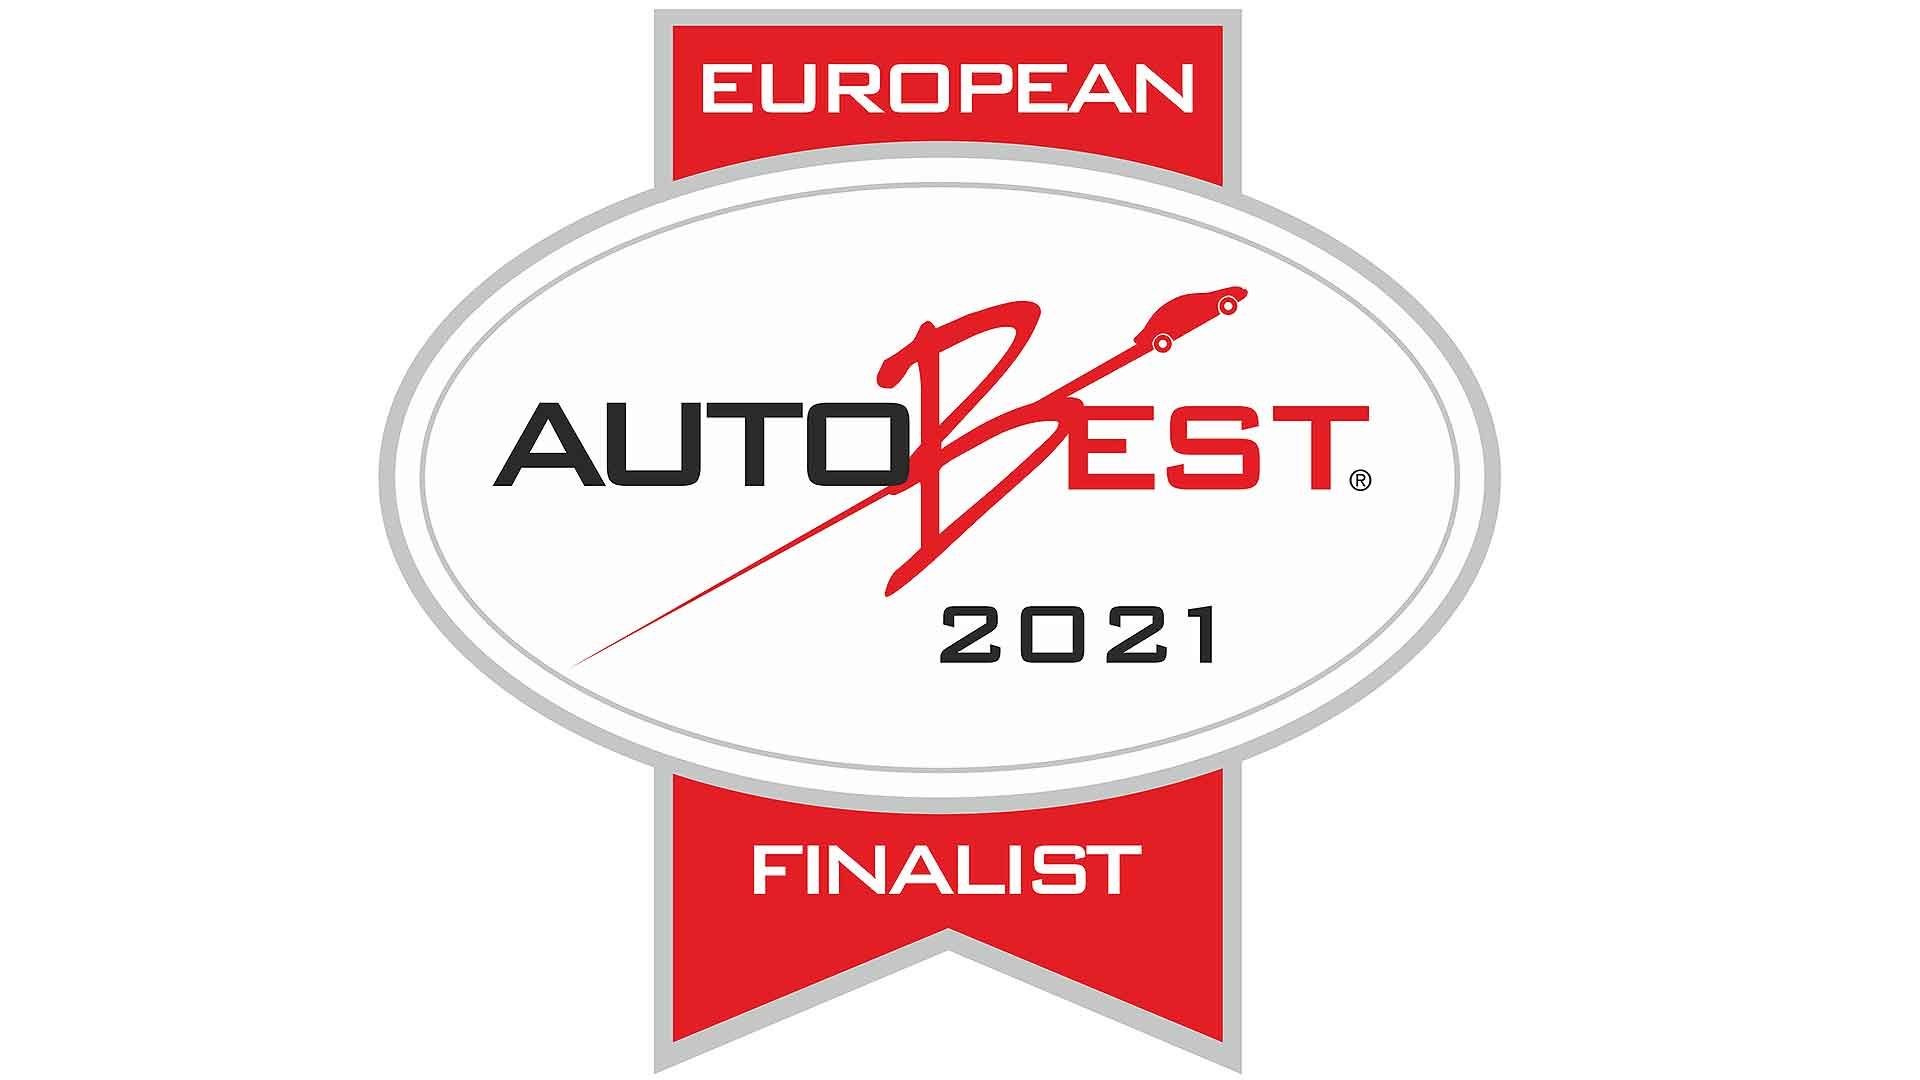 Autobest Finalist 2021